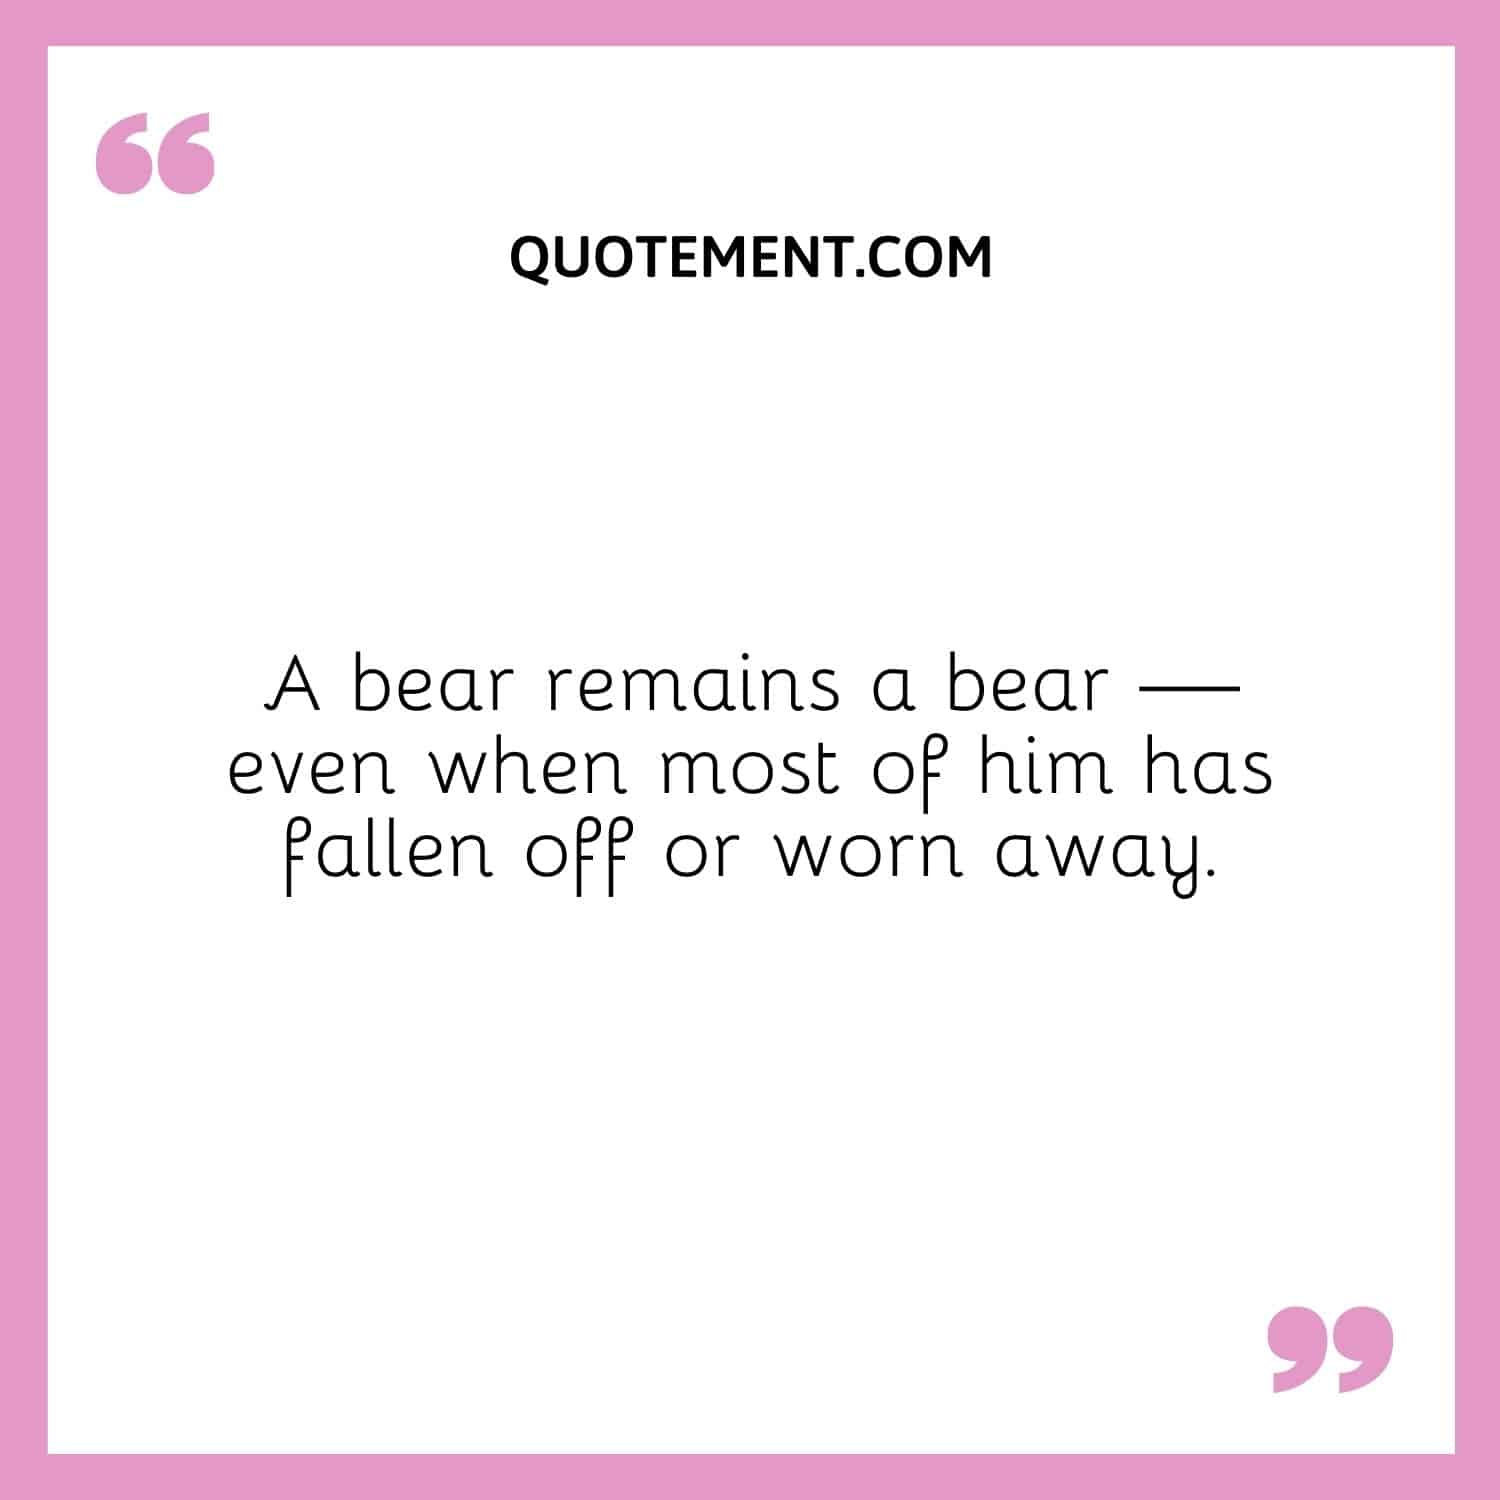 A bear remains a bear